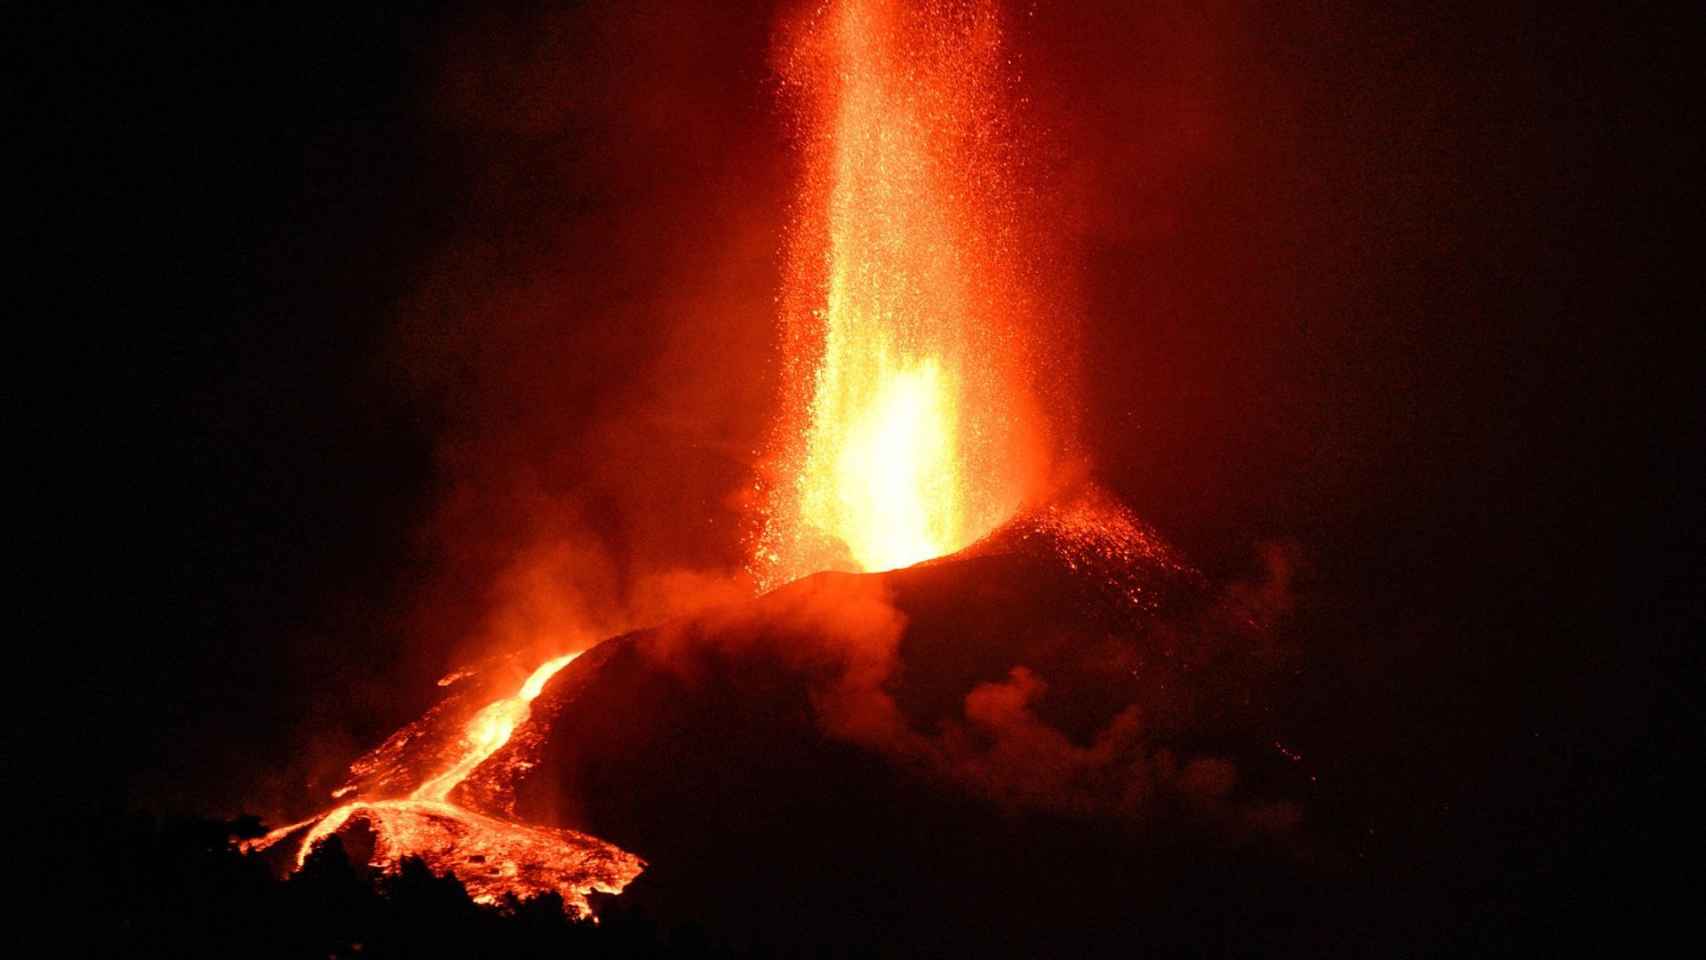 El volcán de Cumbre Vieja en La Palma, en erupción.